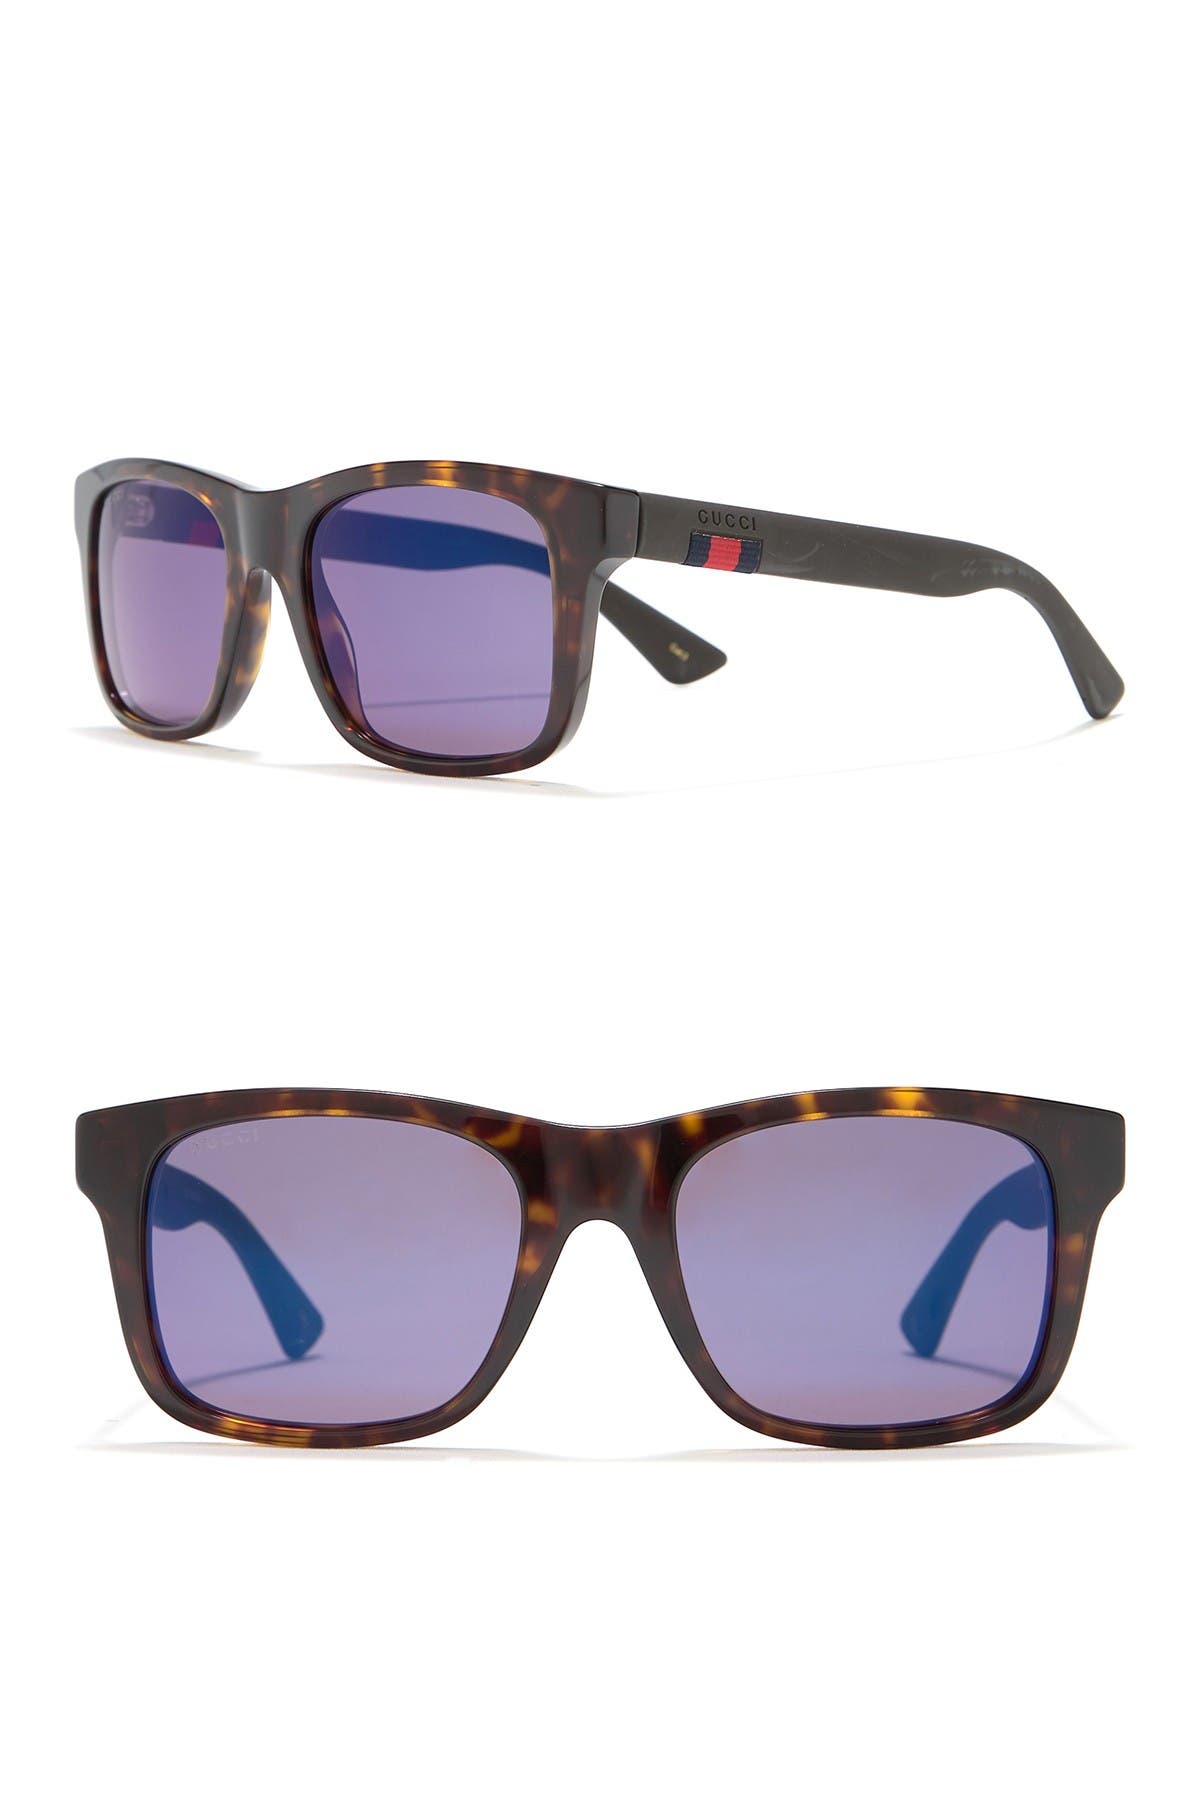 gucci 53mm square sunglasses